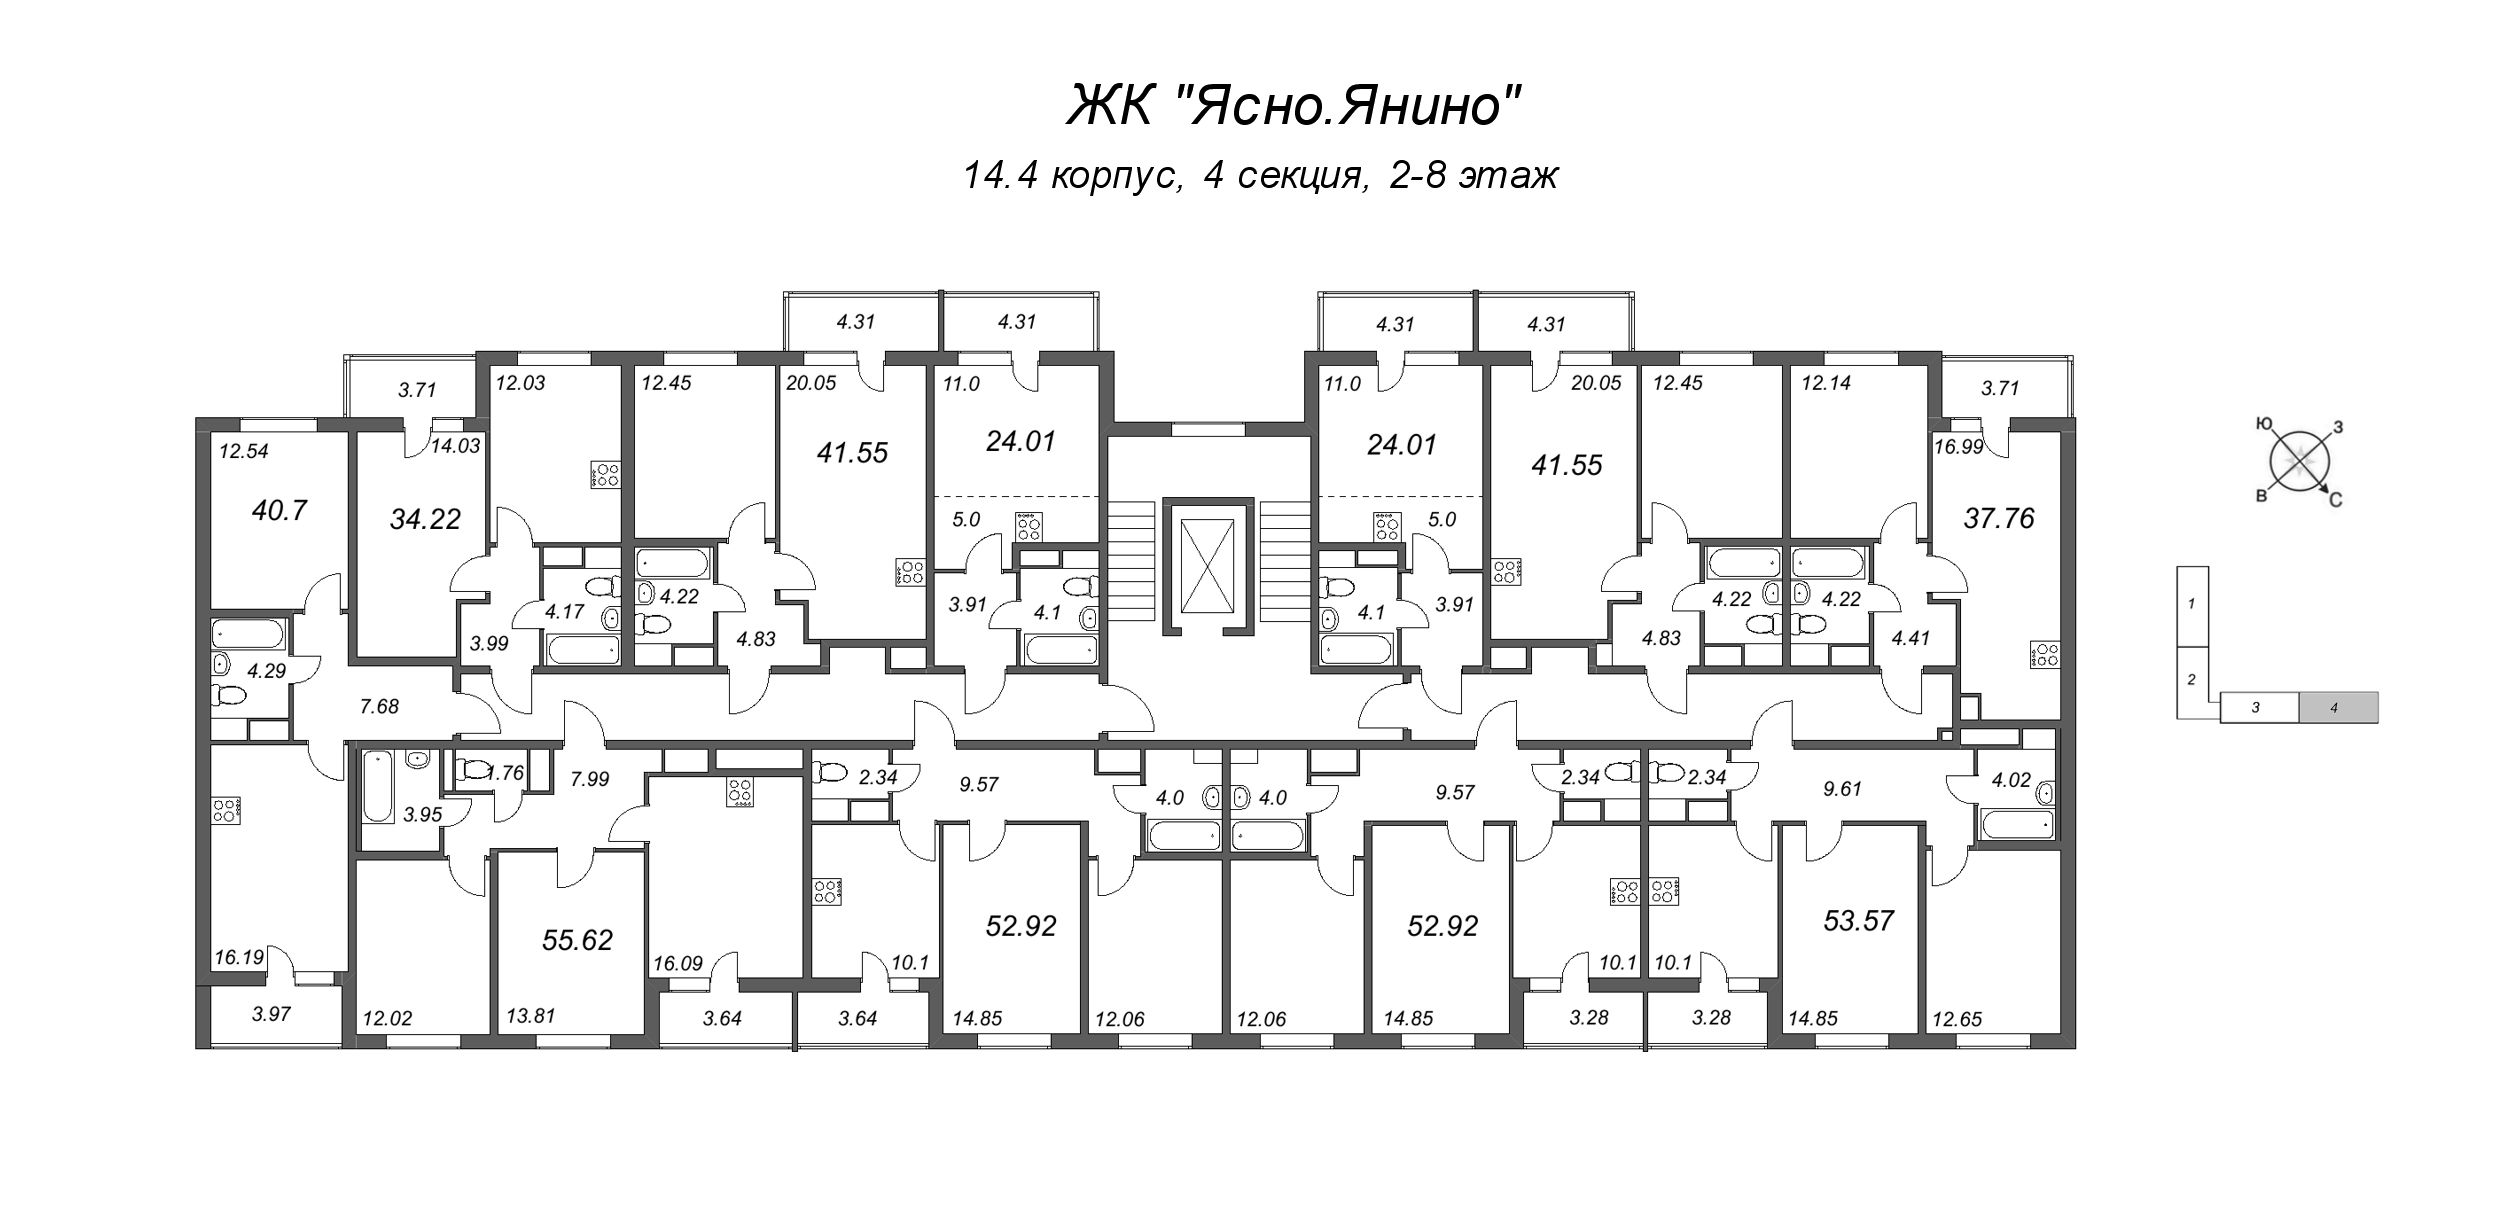 Квартира-студия, 24.01 м² в ЖК "Ясно.Янино" - планировка этажа